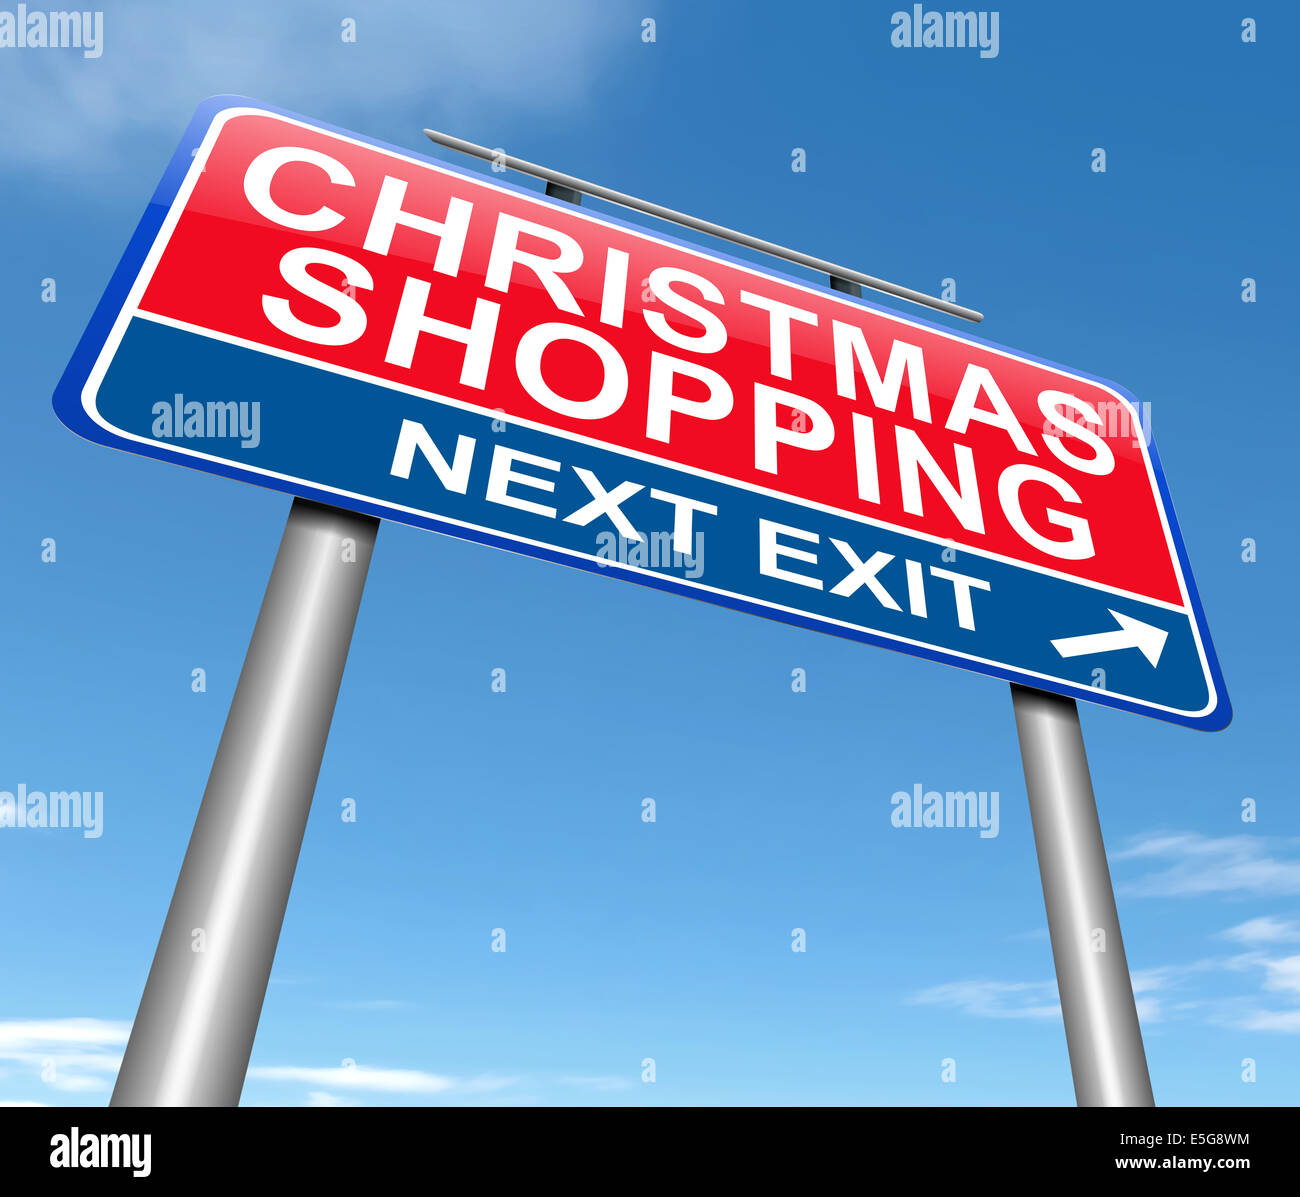 Christmas shopping concept. Stock Photo